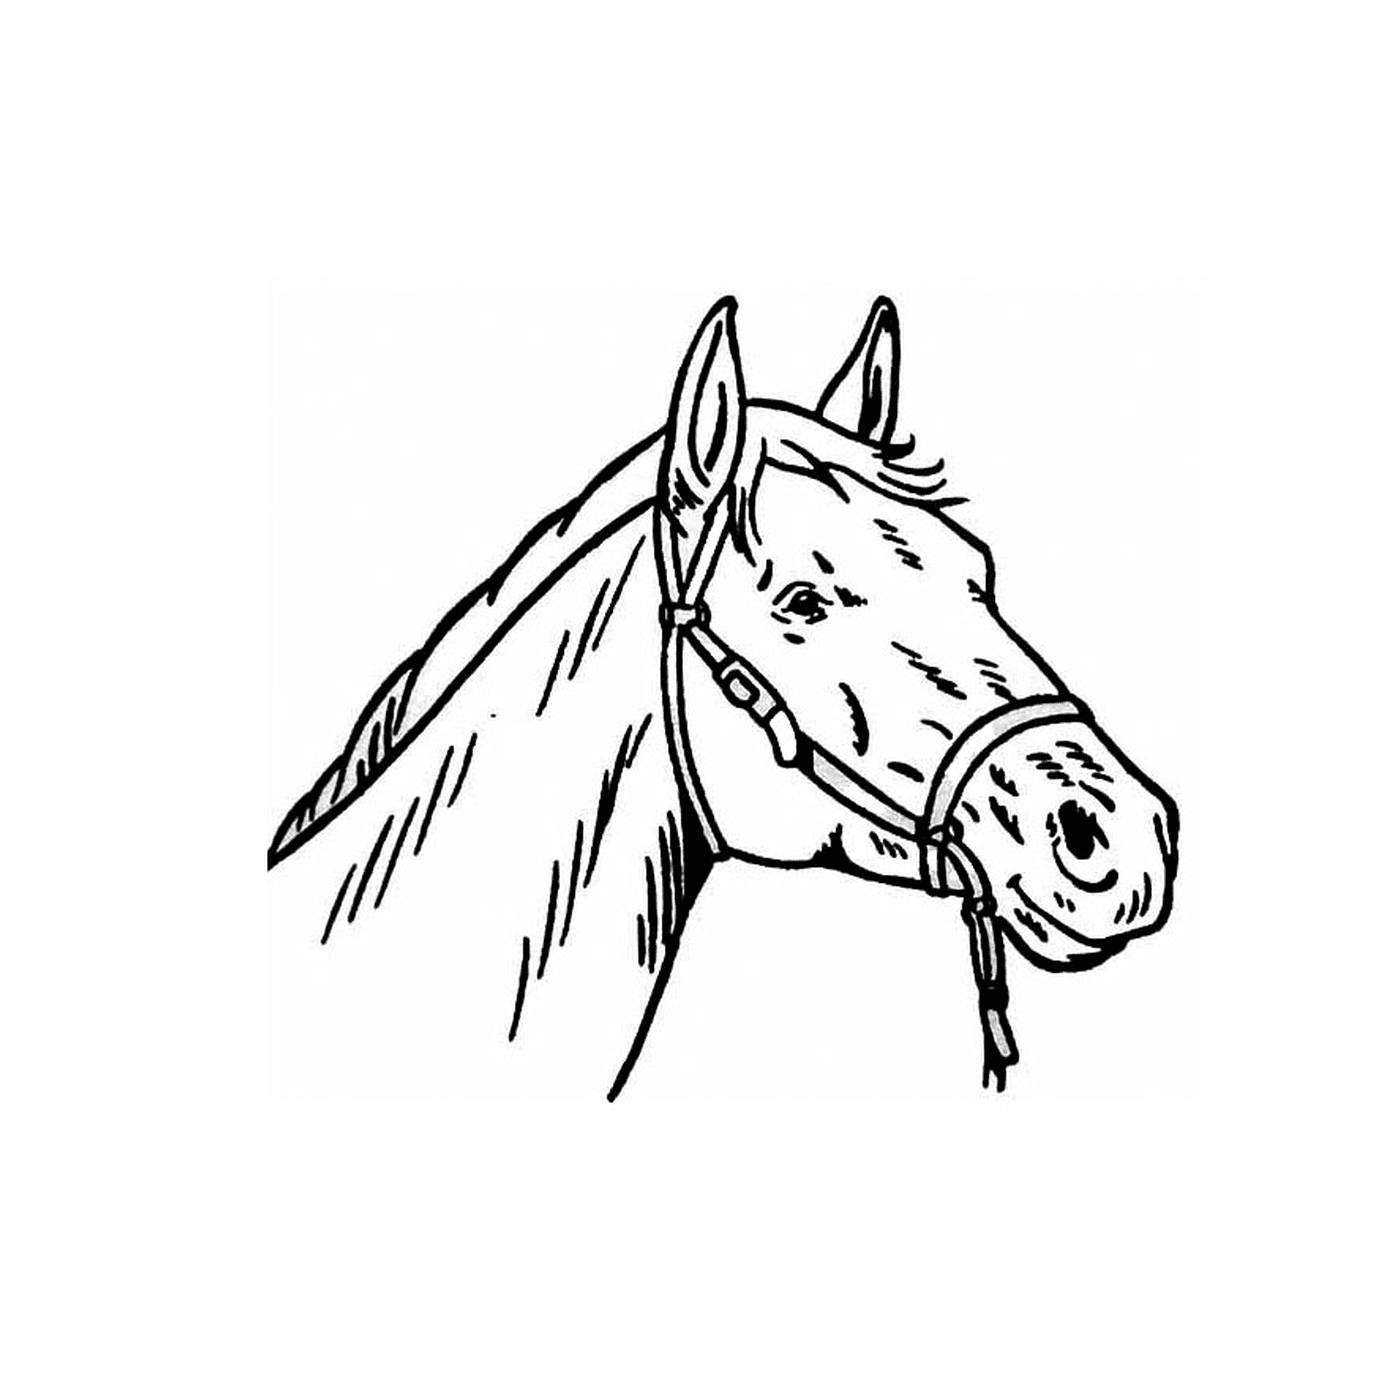  Um retrato impressionante da cabeça de um cavalo 